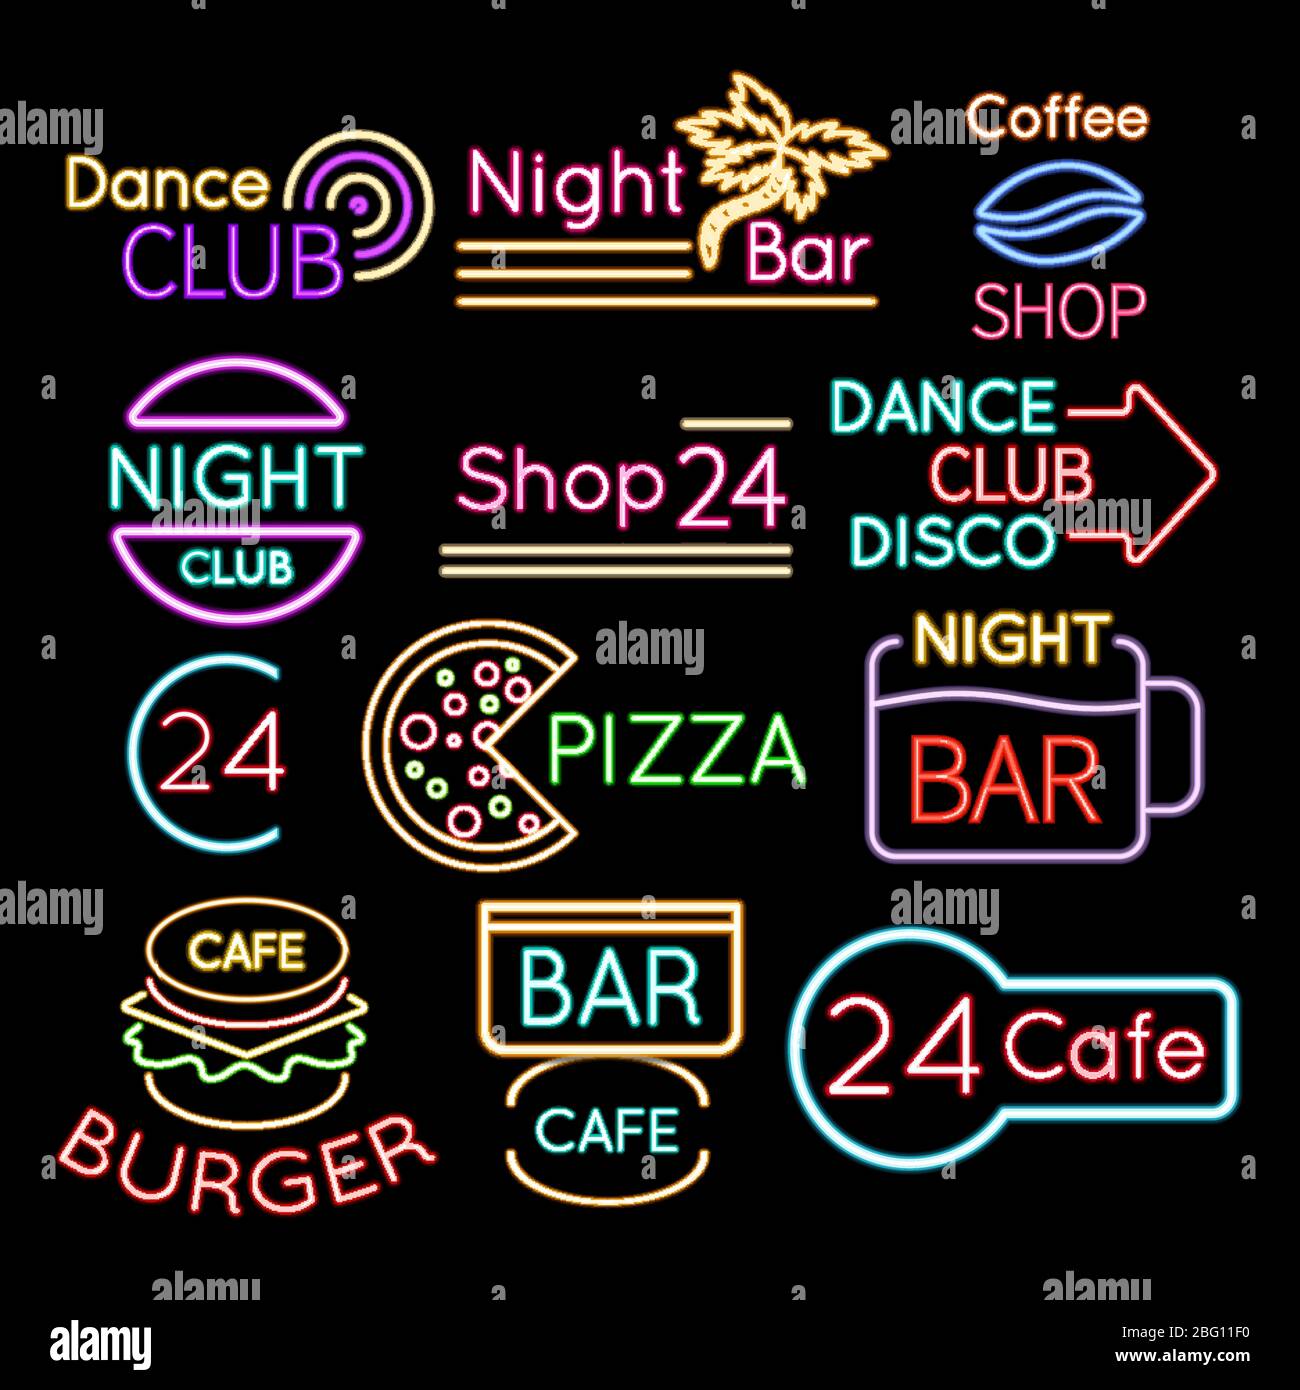 Bar, Dance Club Café Neonschilder isoliert auf schwarzem Hintergrund. Neonschild für Café oder Bar, hell beleuchtetes leuchtendes Banner, Vektorgrafik Stock Vektor